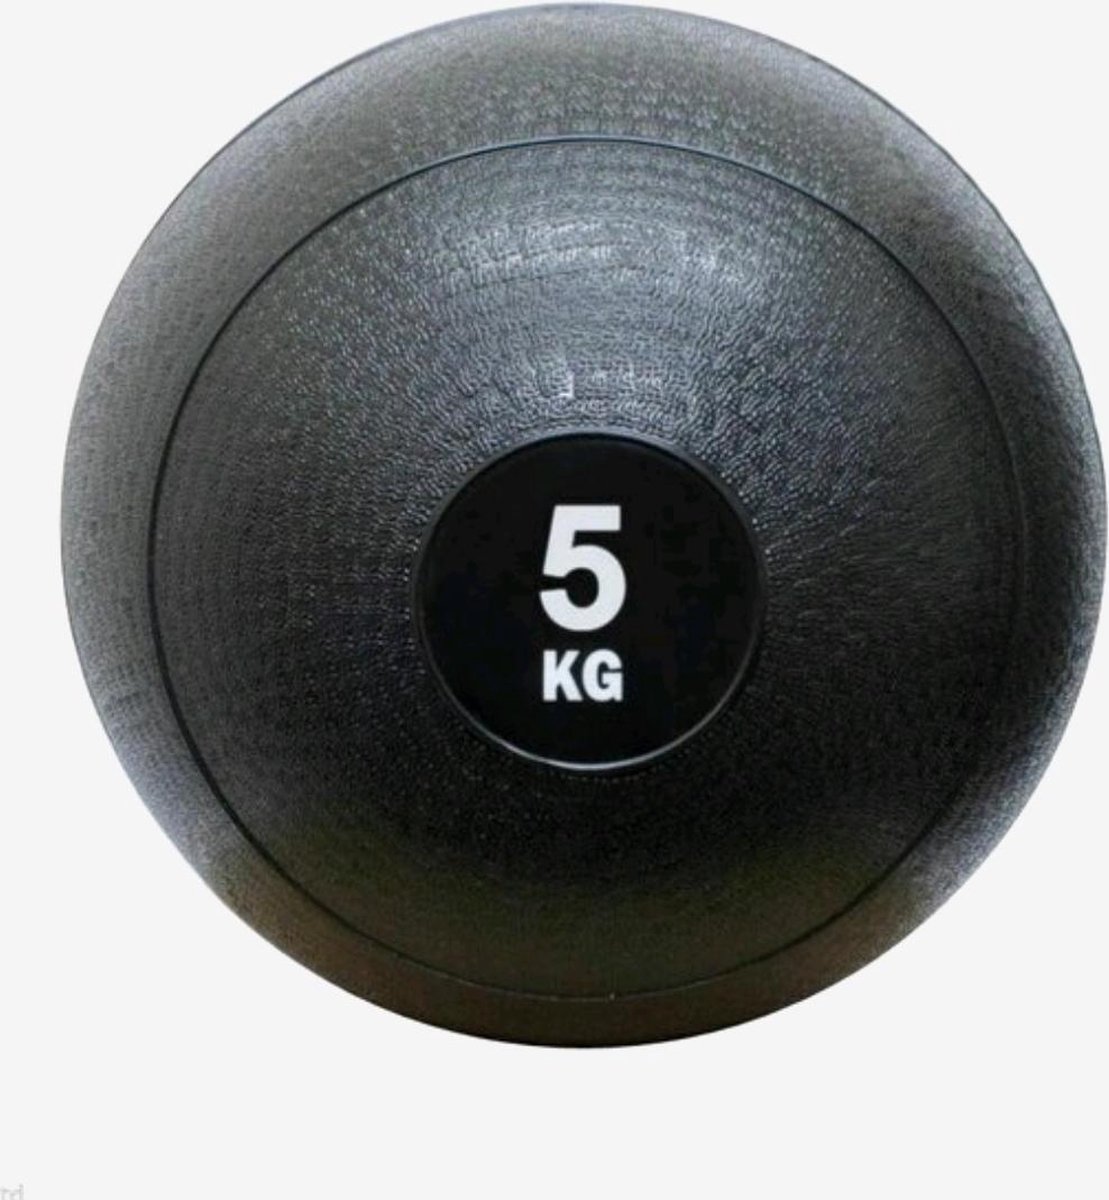 Medicijn bal-medicine ball-sand ball- crossfit ball- fitness bal-5 KG -zwart-gewichten-krachttraining-fitness accessoires- home workout